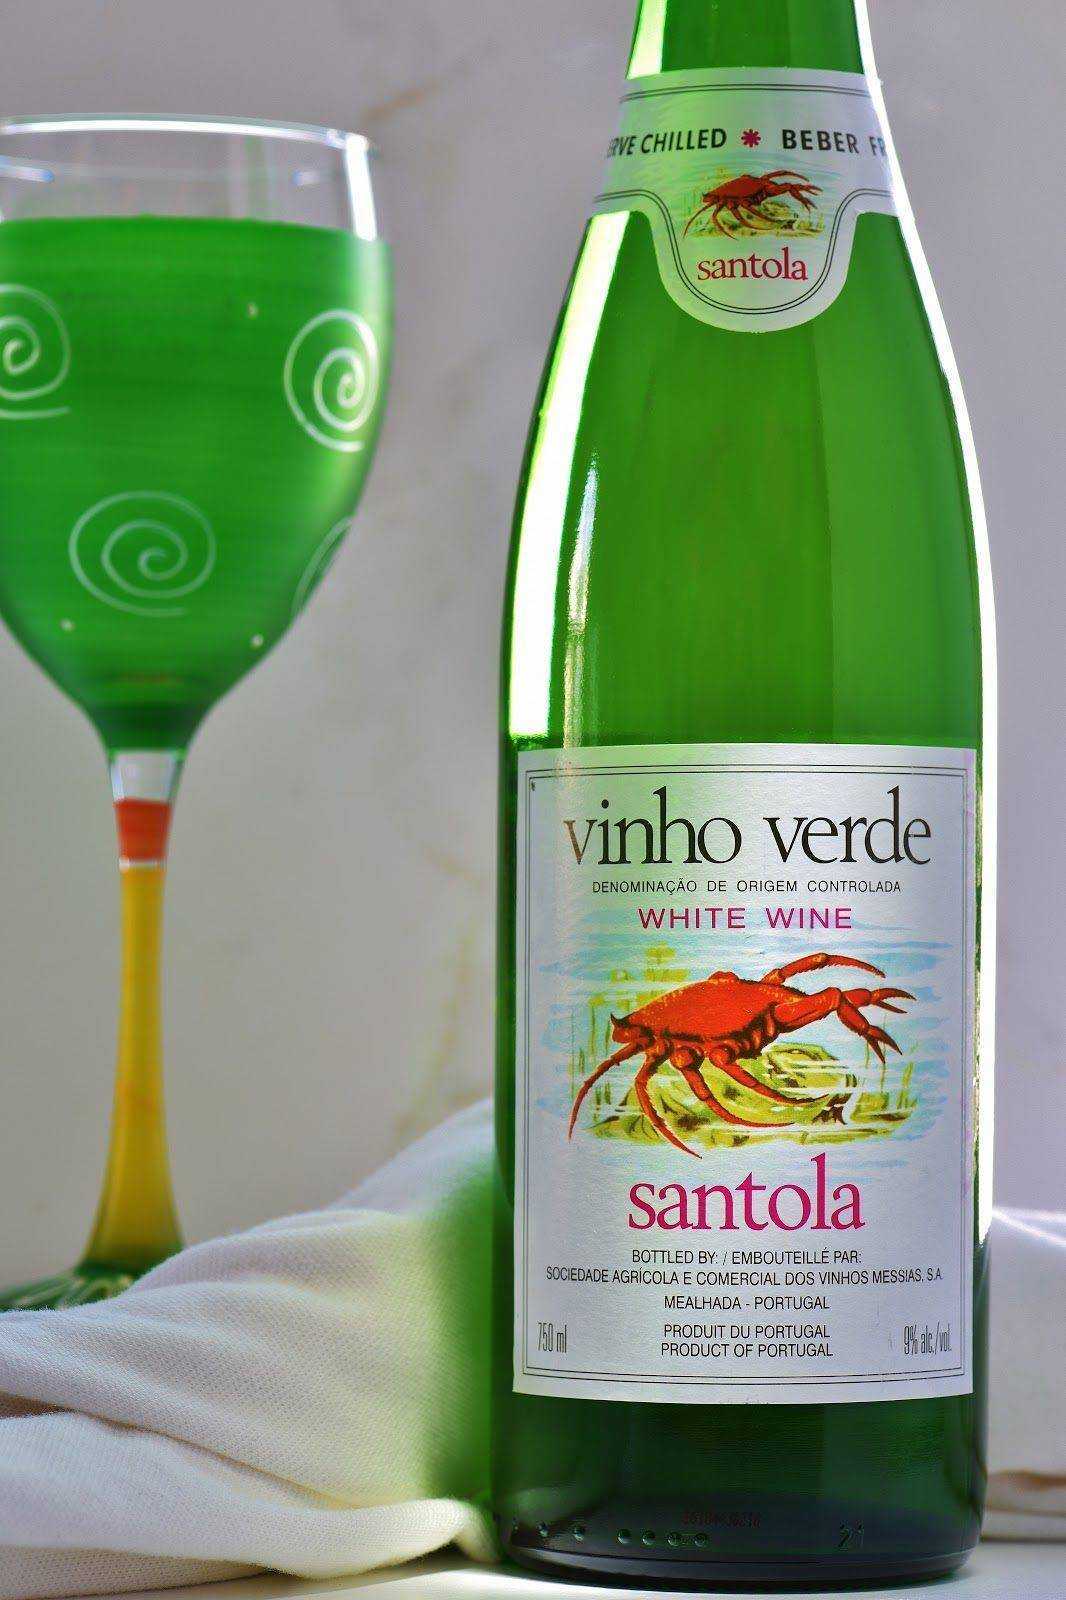 Зеленое вино из португалии: что это такое и как его пить?